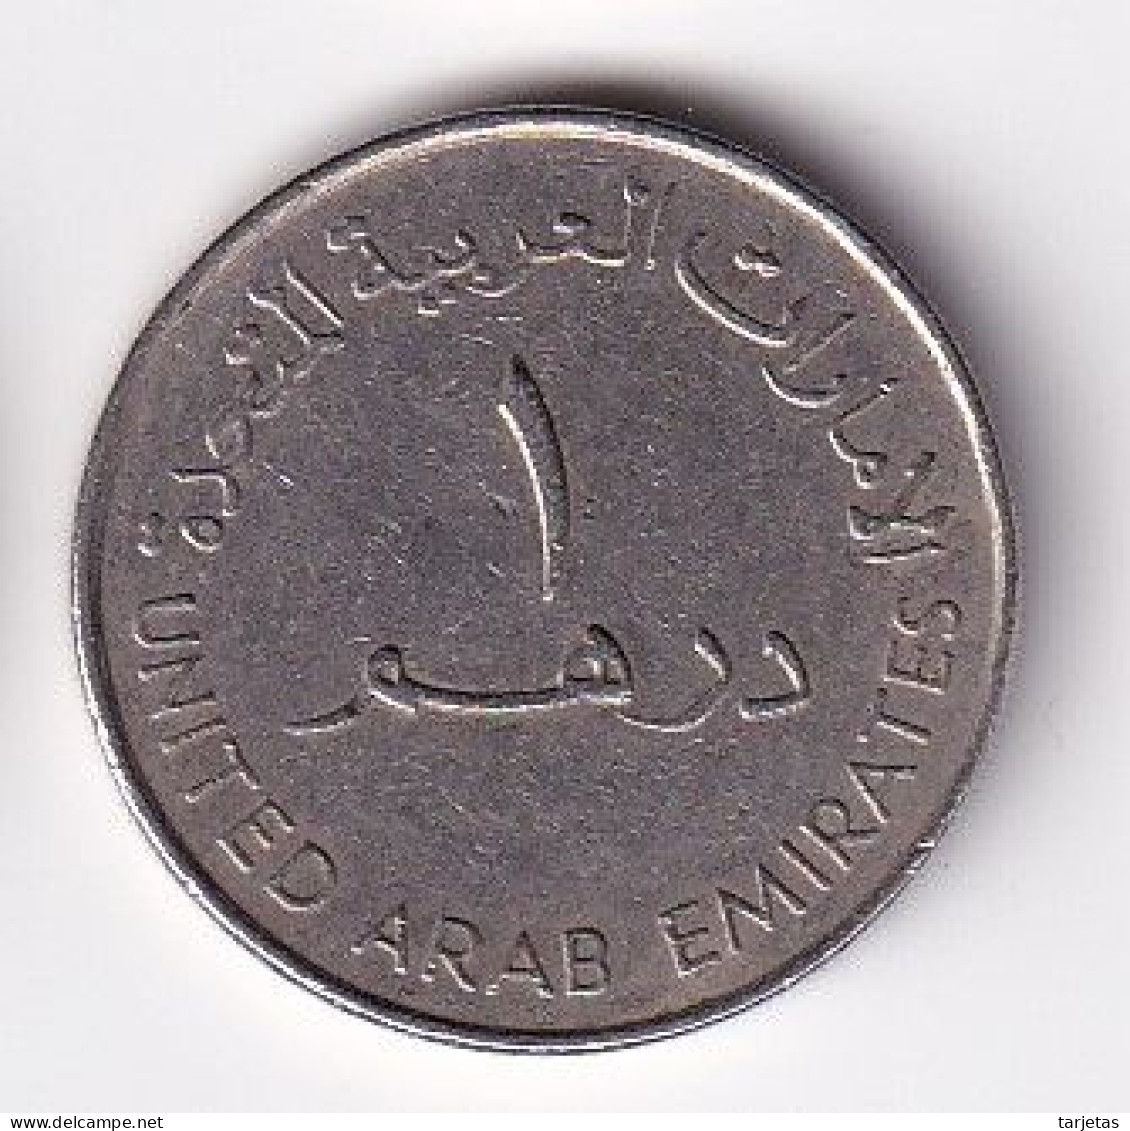 MONEDA DE EMIRATOS ARABES DE 1 DIRHAM DEL AÑO 1998 - 35 ANIV. BANK OF DUBAI (COIN) - United Arab Emirates